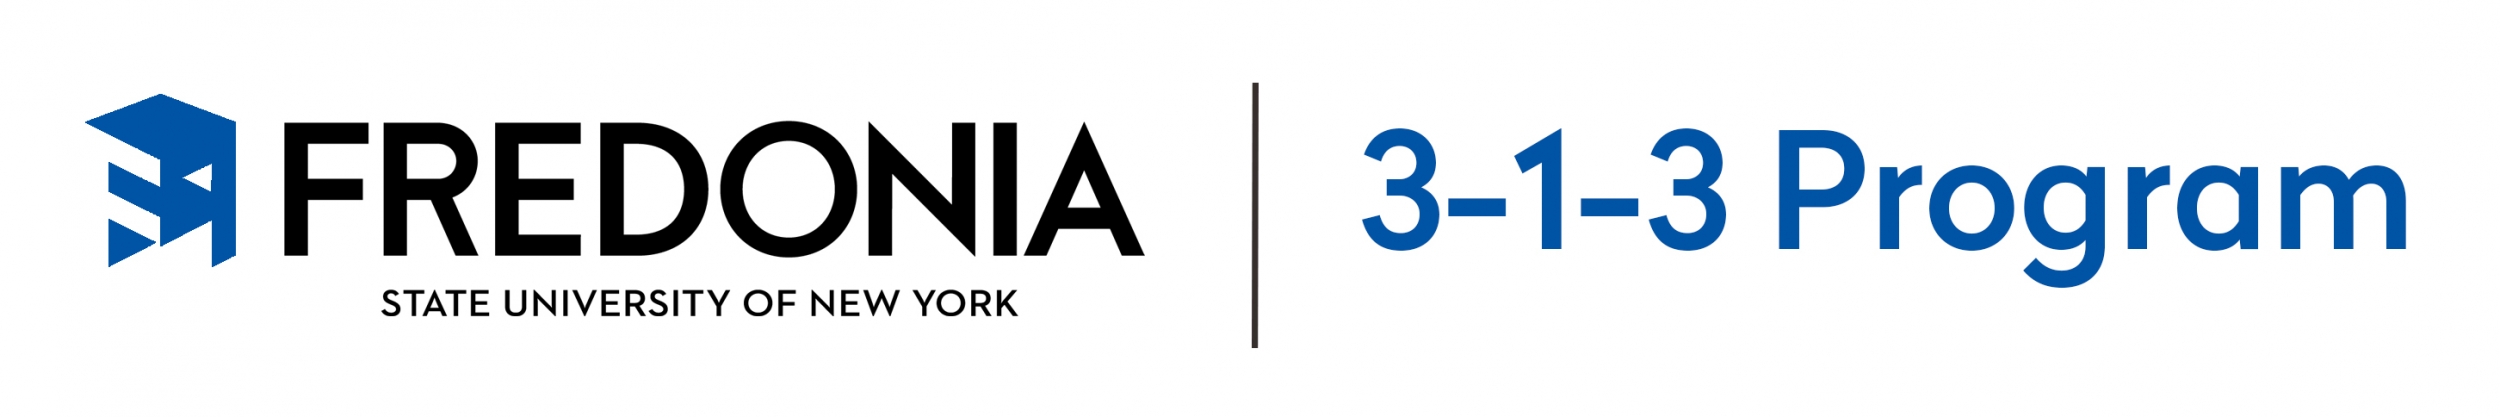 3-1-3 Program Logo